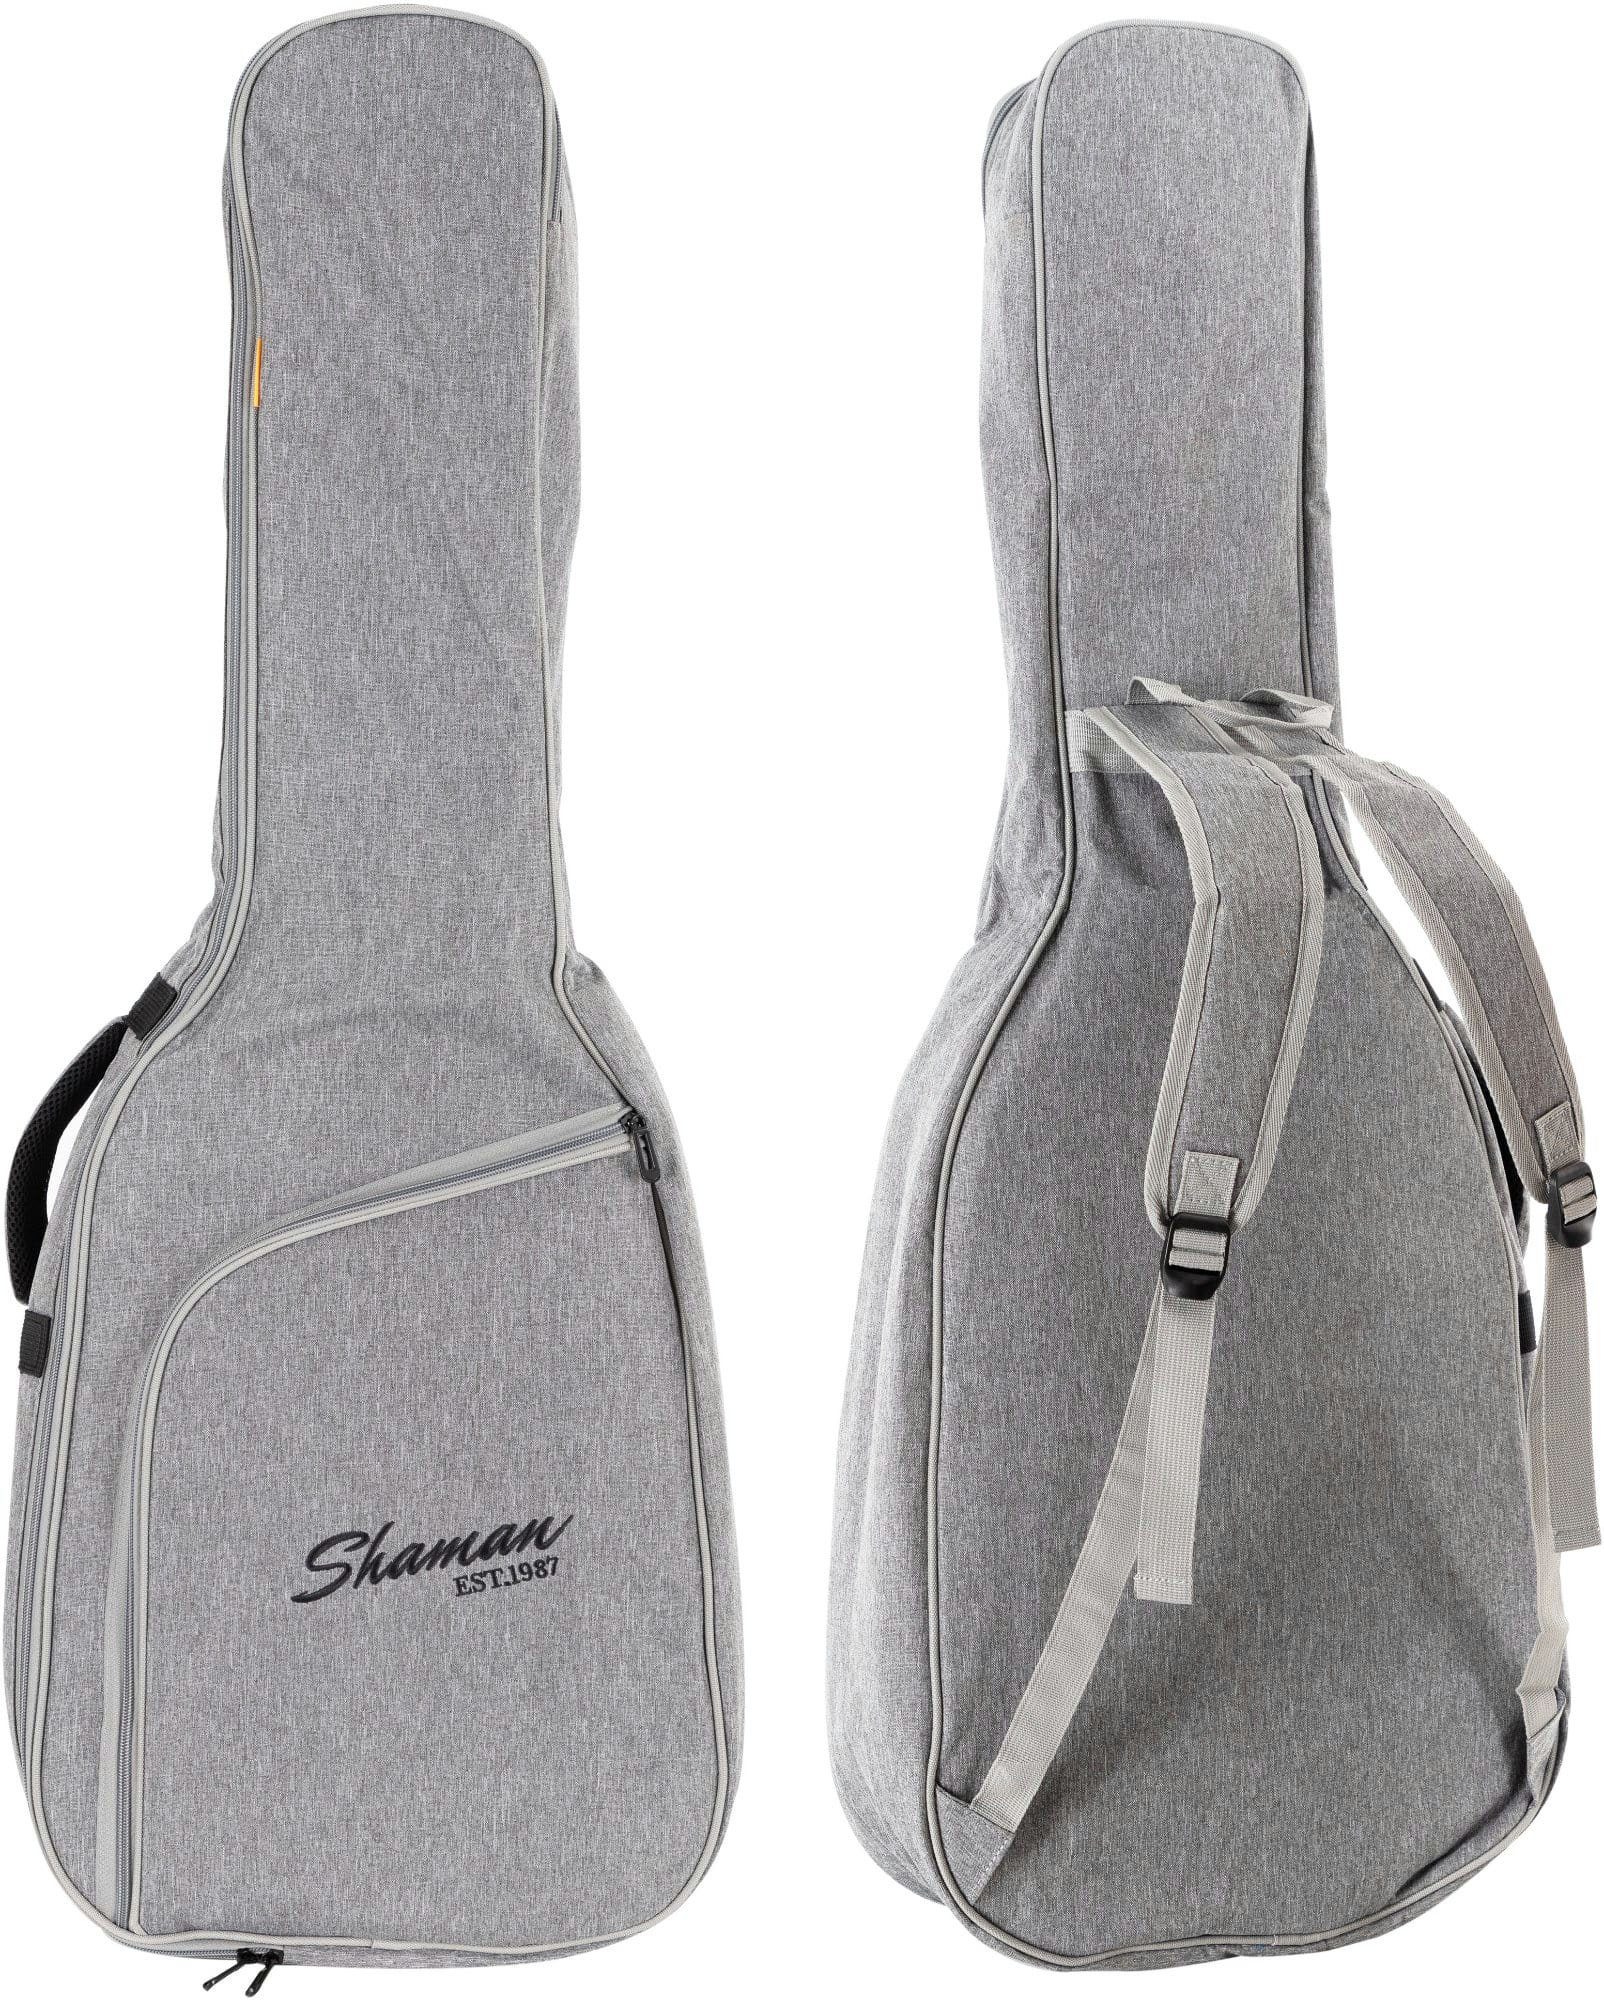 Shaman Instrumentenhals für Konzertgitarrentasche KGB-103 gepolsterte Premium-Line & Grau, Gitarrentasche Rucksack-Gurte Fixierung GY